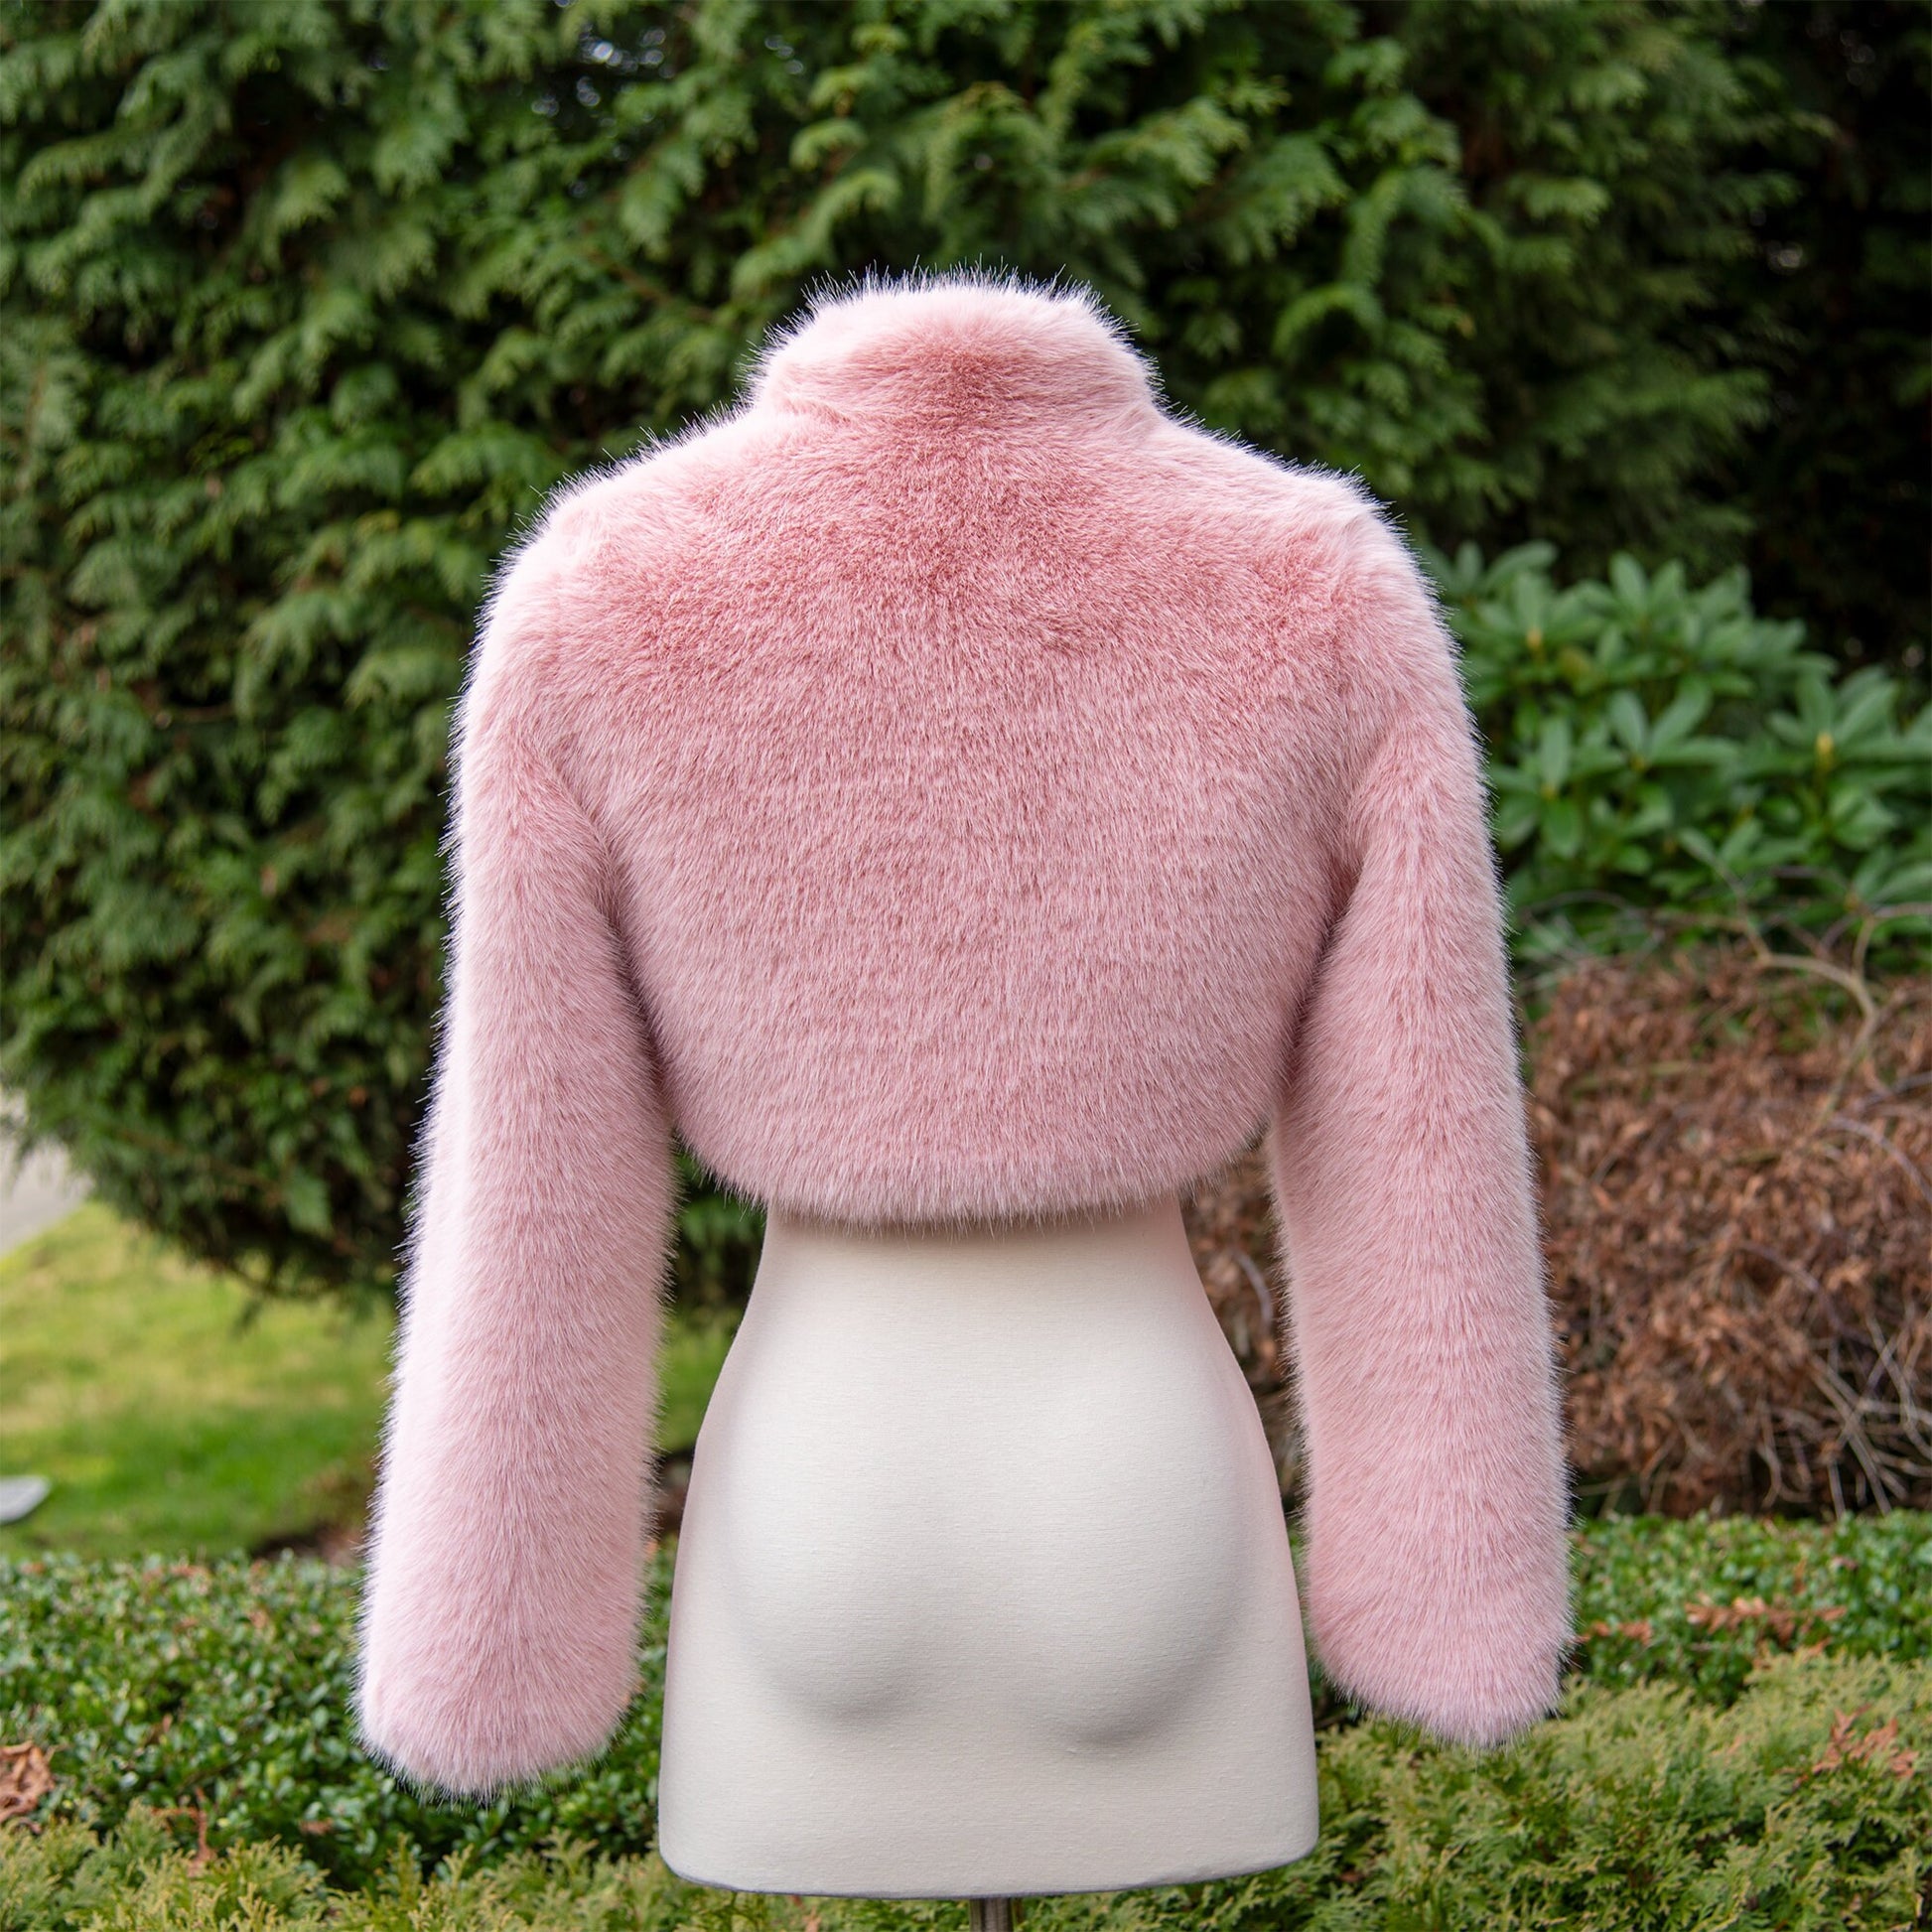 Light pink long sleeve faux fur bolero faux fur jacket faux fur coat faux fur shrug FJ002-light-pink